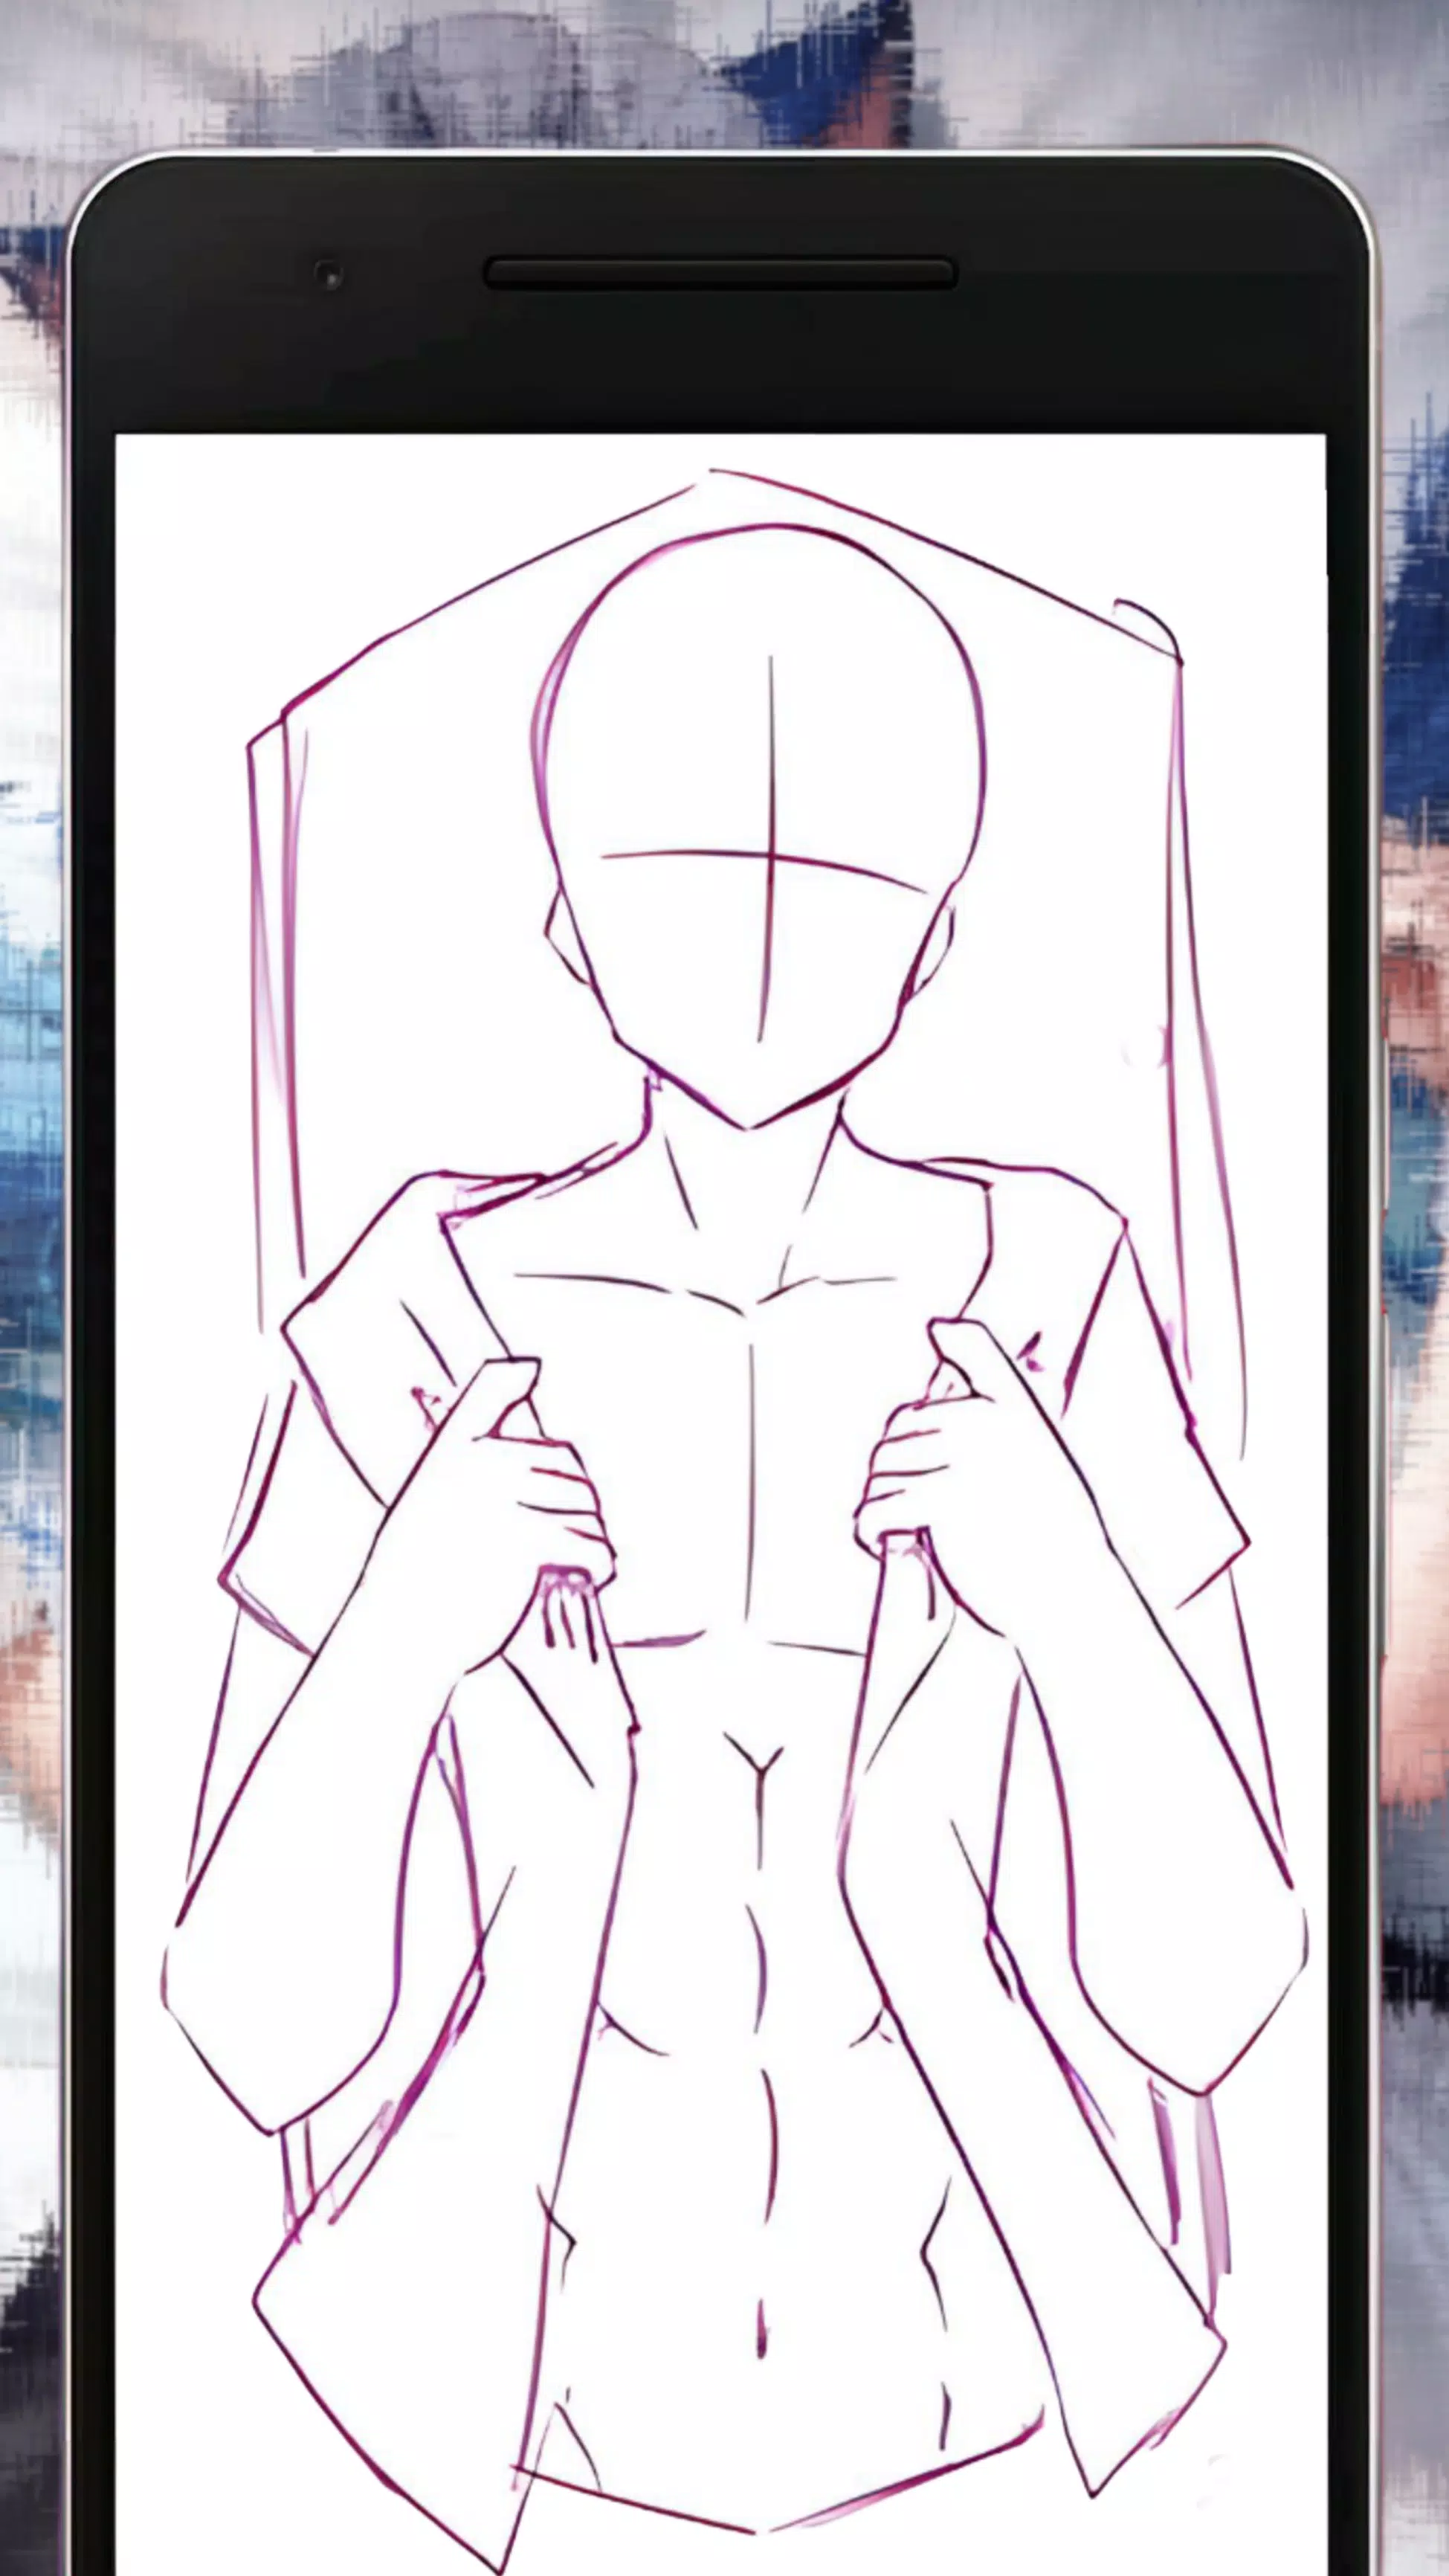 Download do APK de Referência de pose de anime para Android